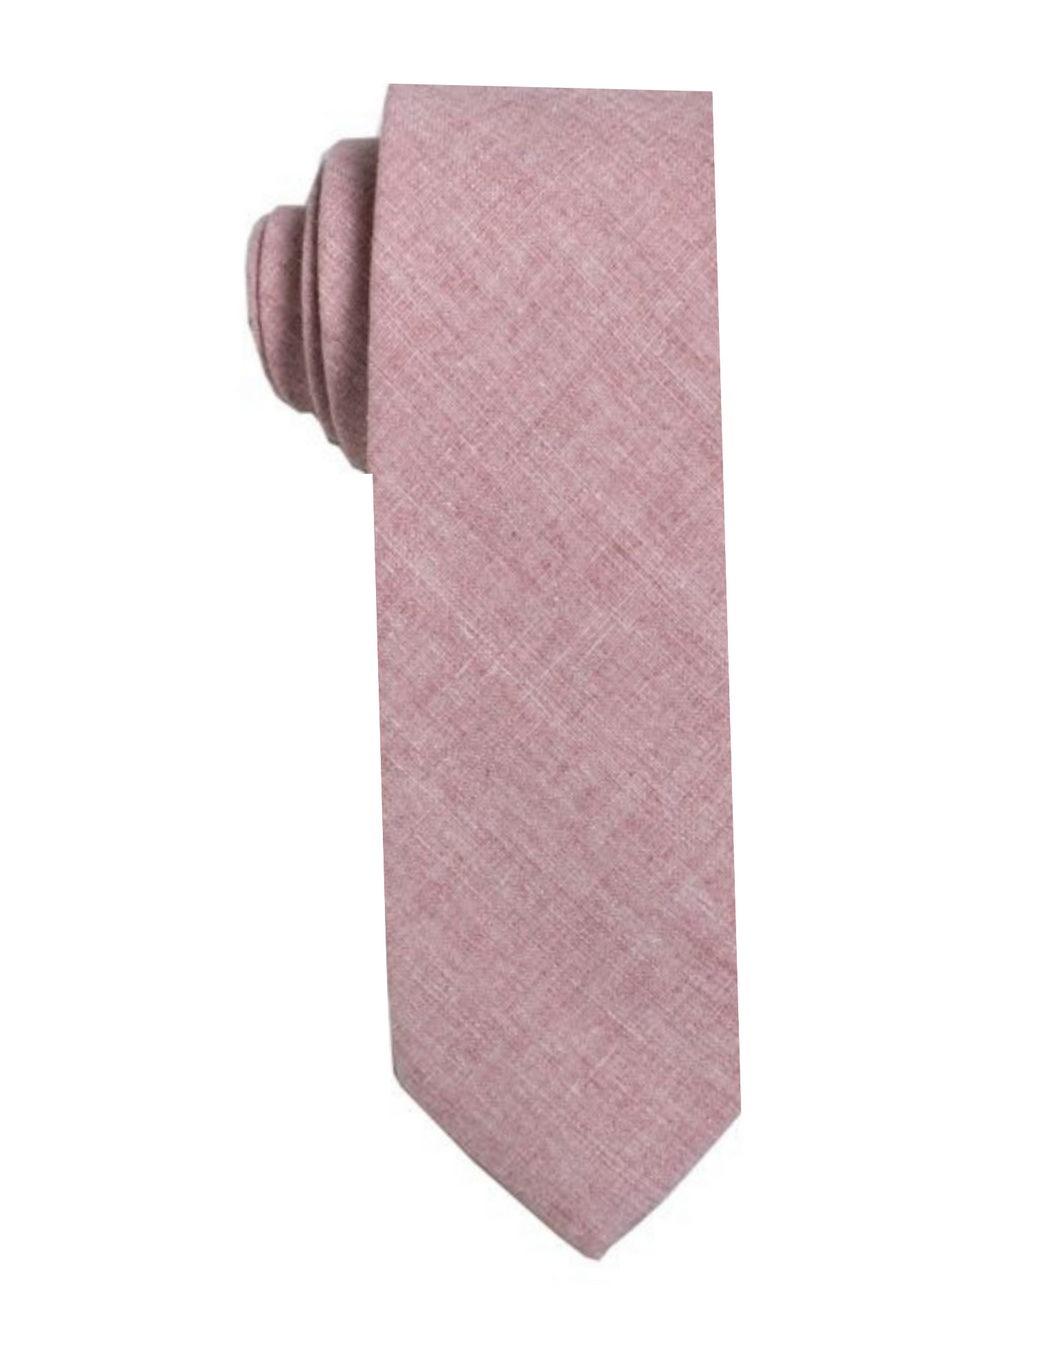 Rose Linen Tie